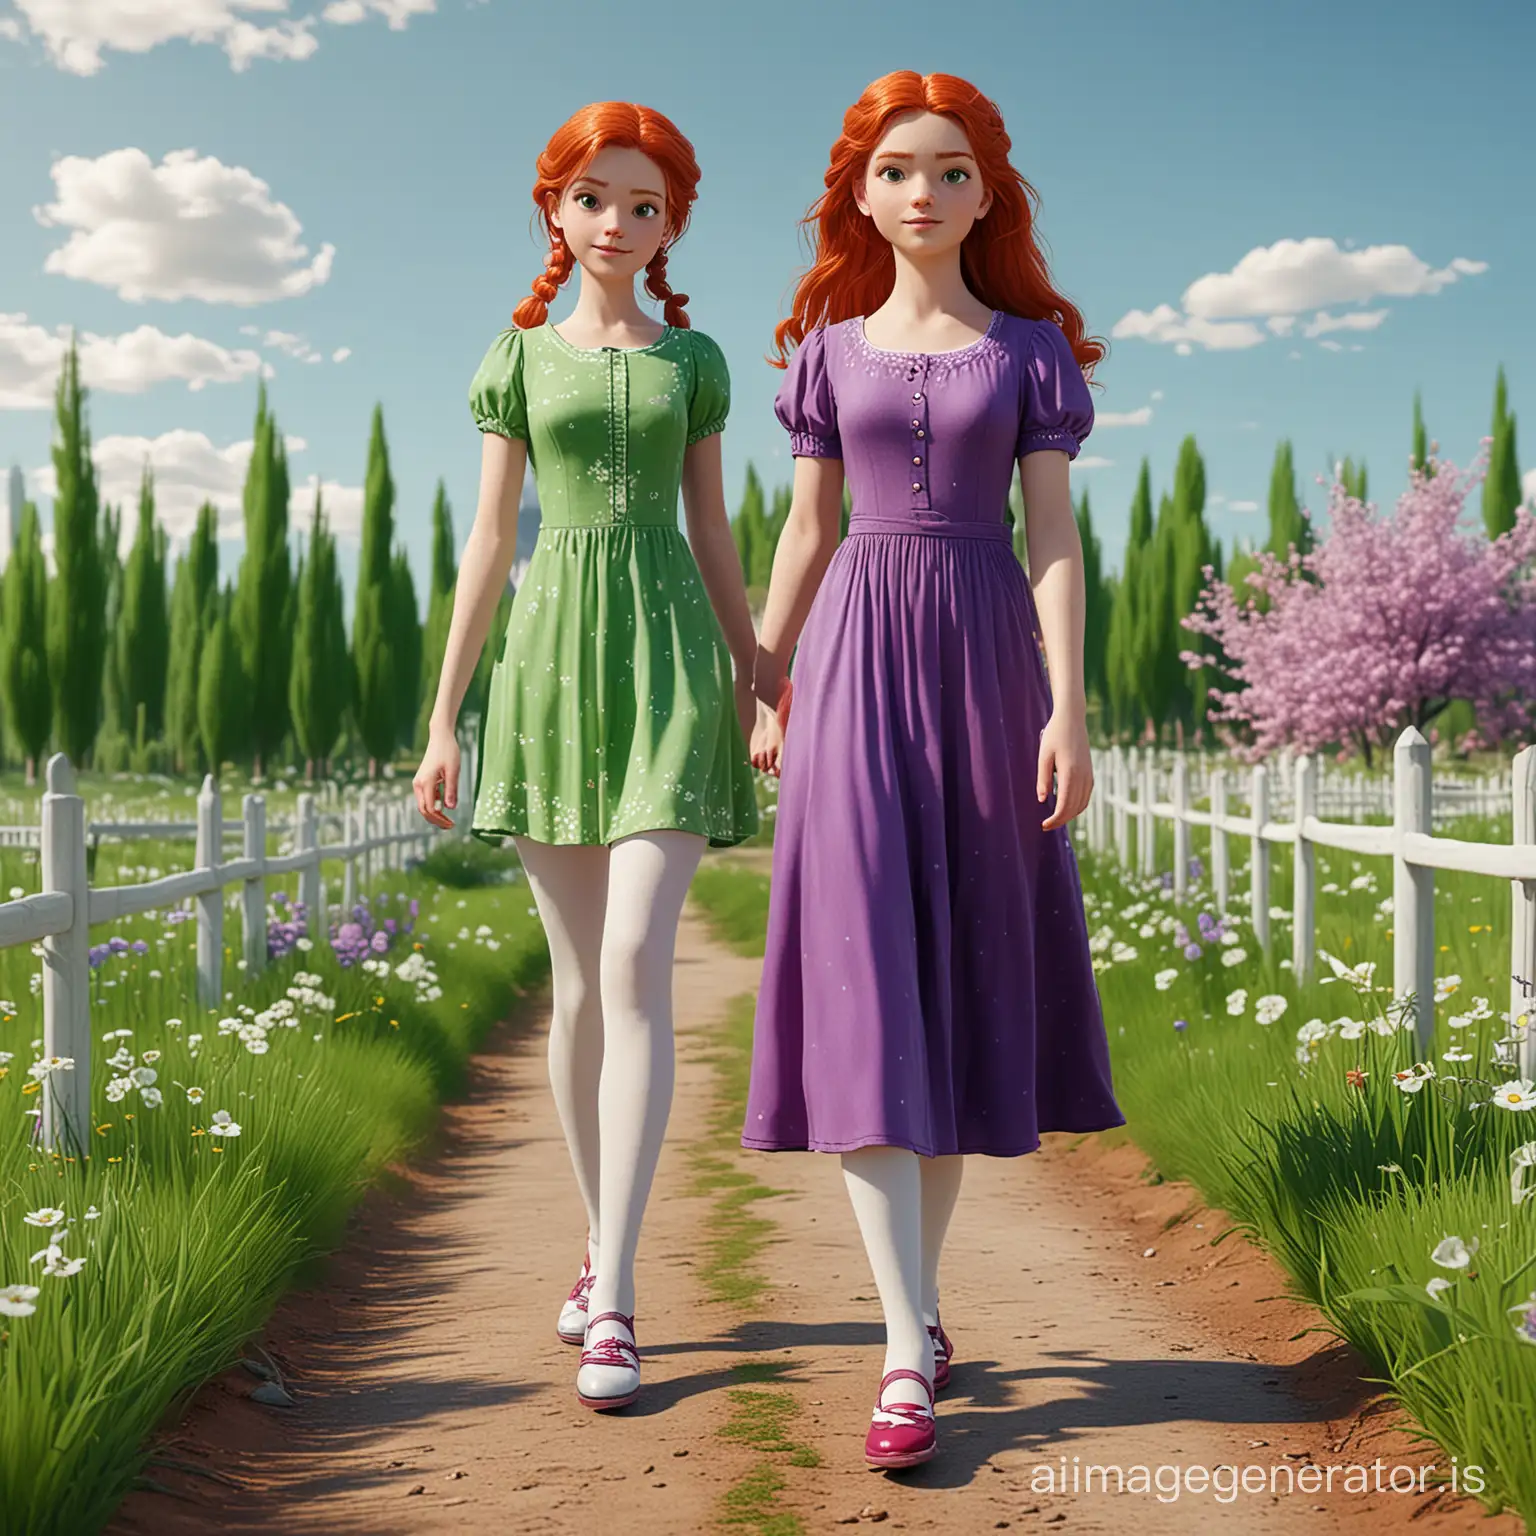 Стилізована 3d графіка: весняний пейзаж та дівчинка, яка має зелені очі, руде волосся одягнена зелену сукню з короткими рукавами максі довжини, білі колготки, фіолетові туфелькі